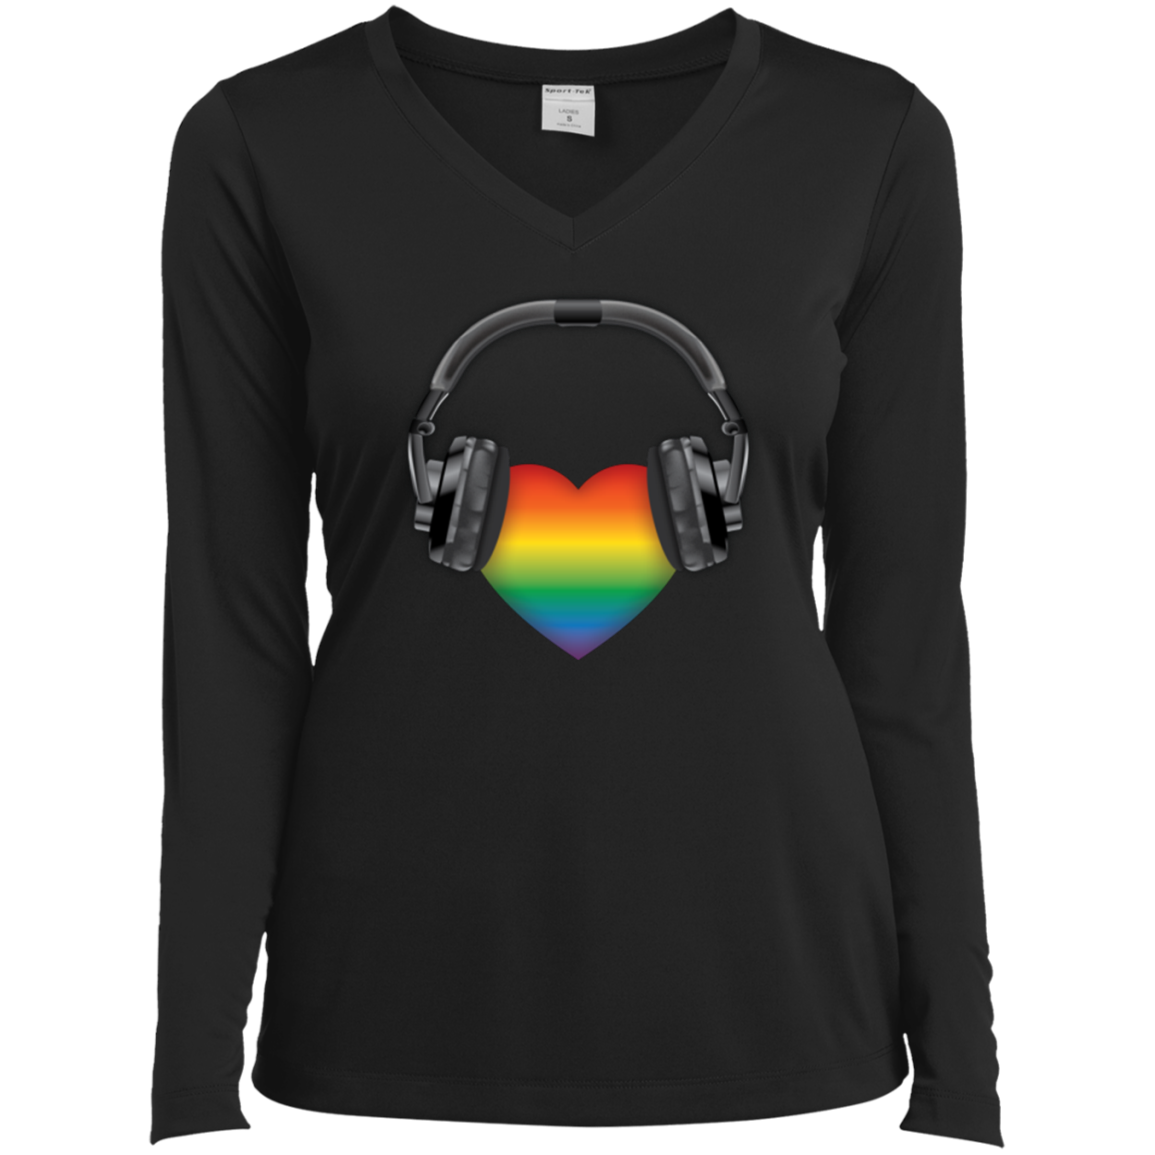 Listen to Your Heart LGBT Pride black full sleeves vneck tshirt for women